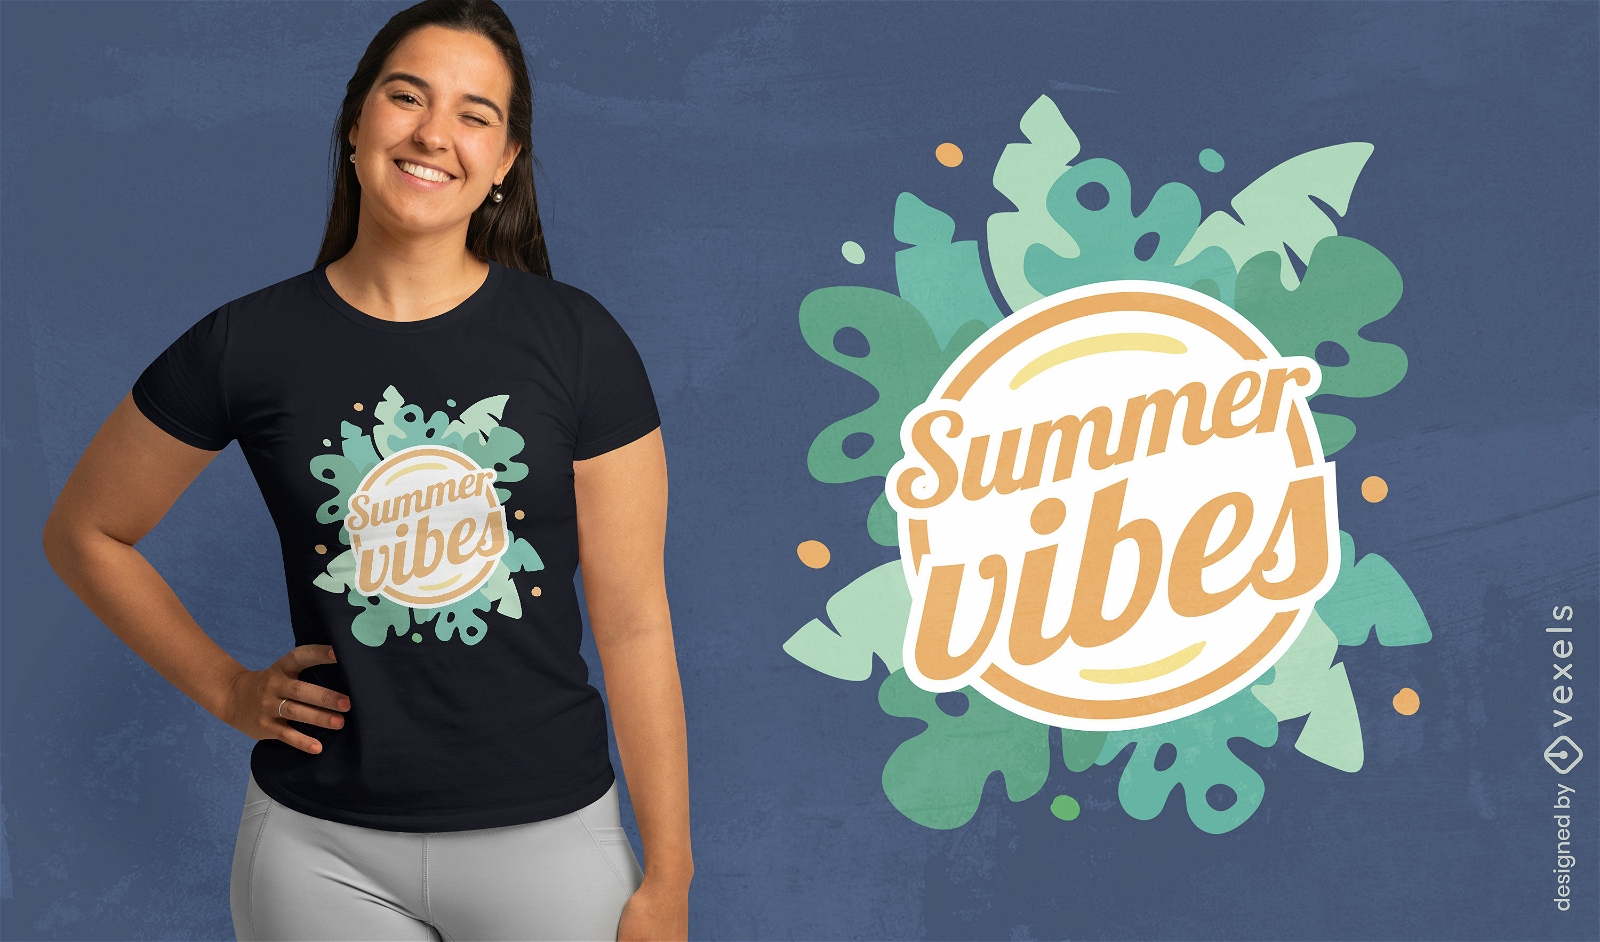 Summer vibes motivational t-shirt design